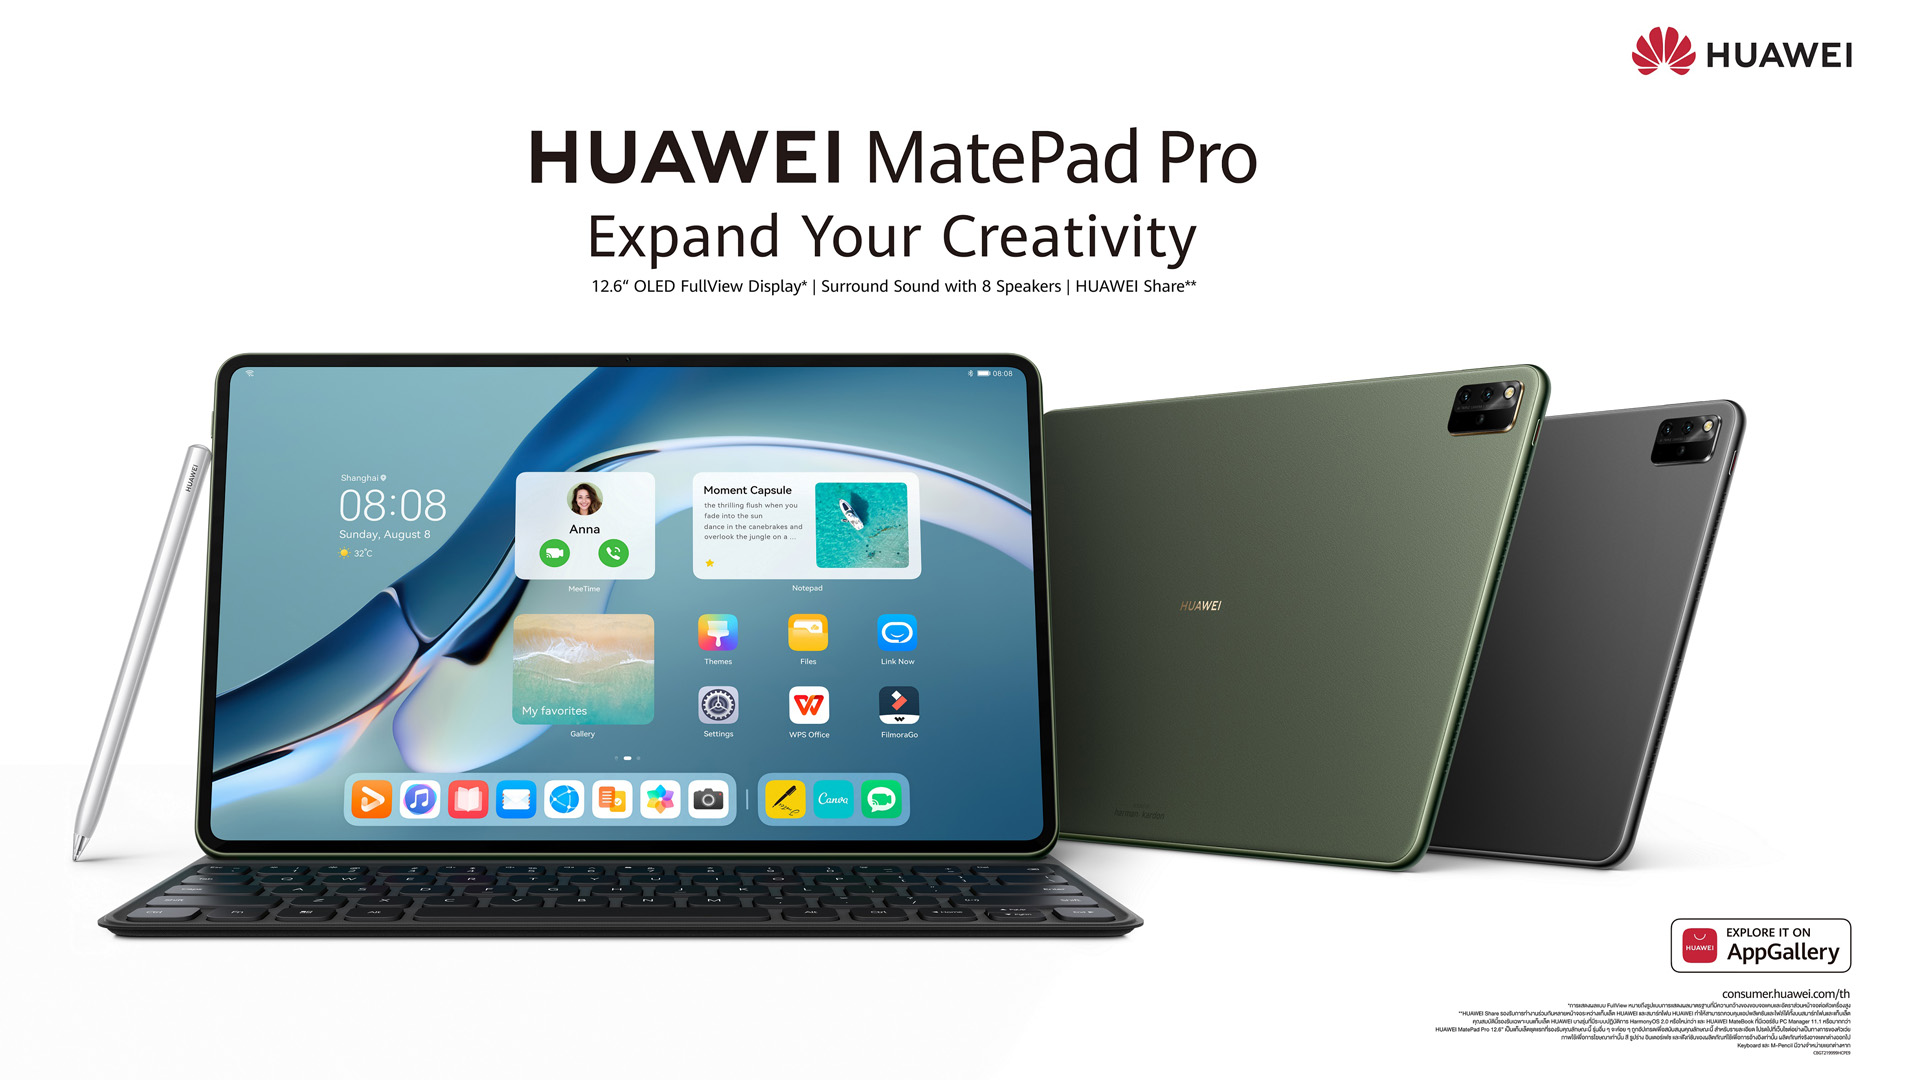 เปิดตัวแล้ว HUAWEI MatePad Pro 12.6 นิ้ว  จอ OLED ลำโพง Harman แบตอึดใช้นาน 14 ชั่วโมง